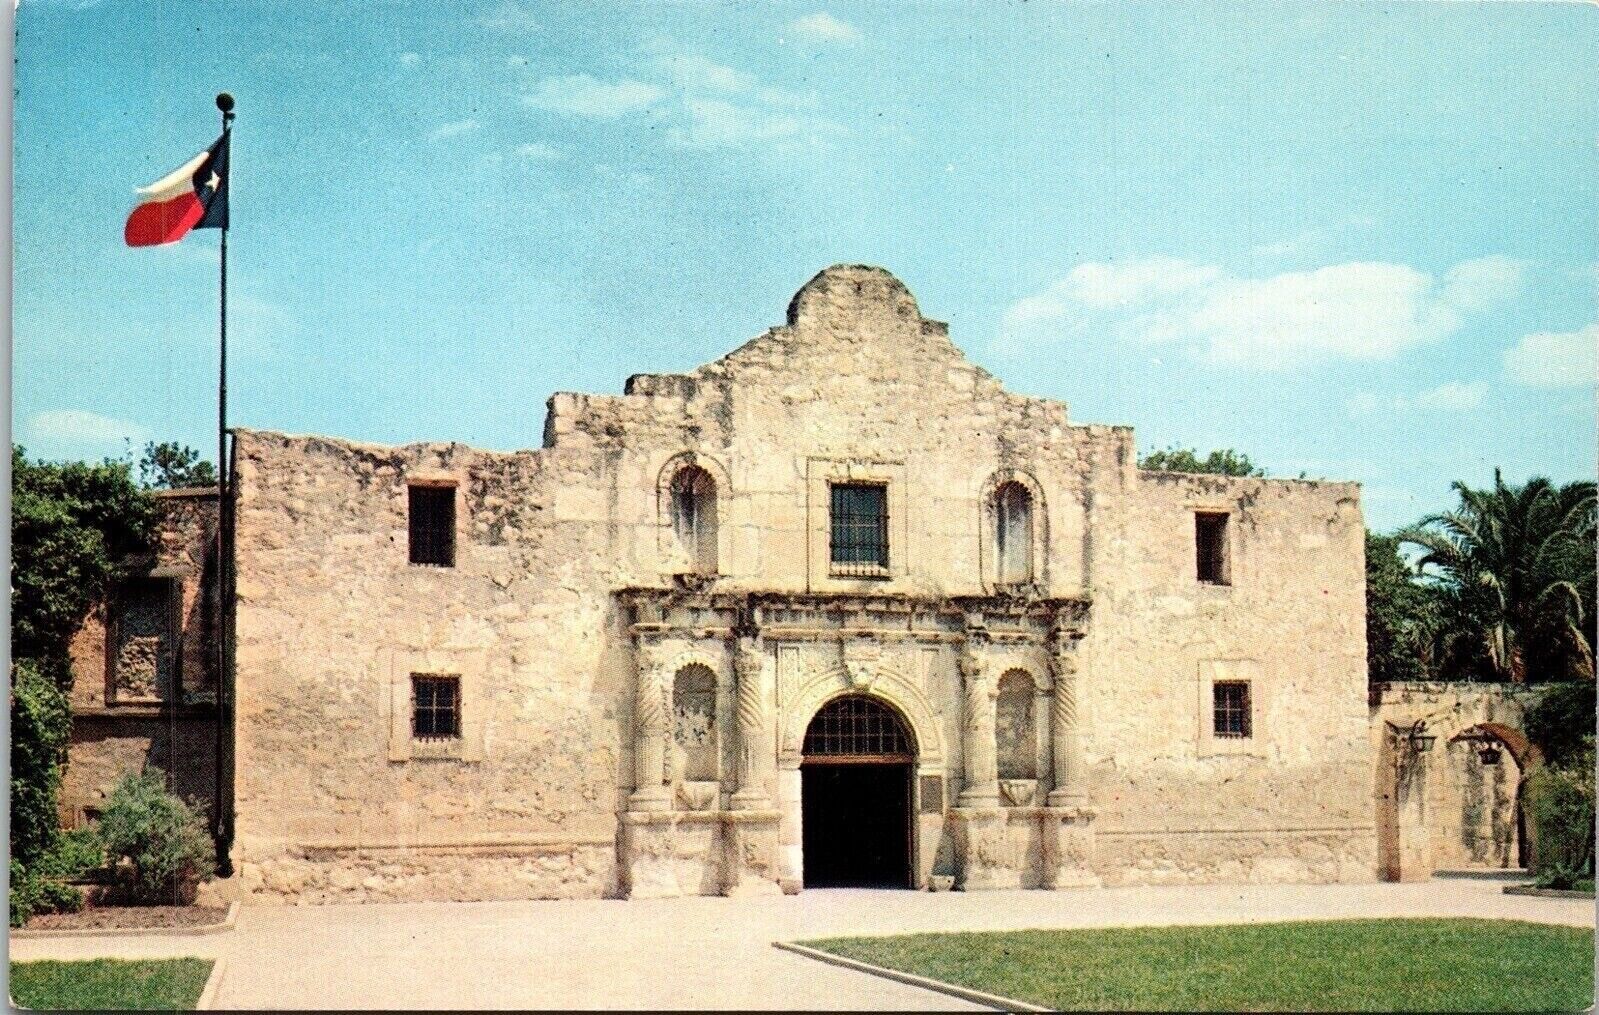 The Alamo San Antonio Texas TX Postcard VTG UNP Plastichrome Vintage Unused